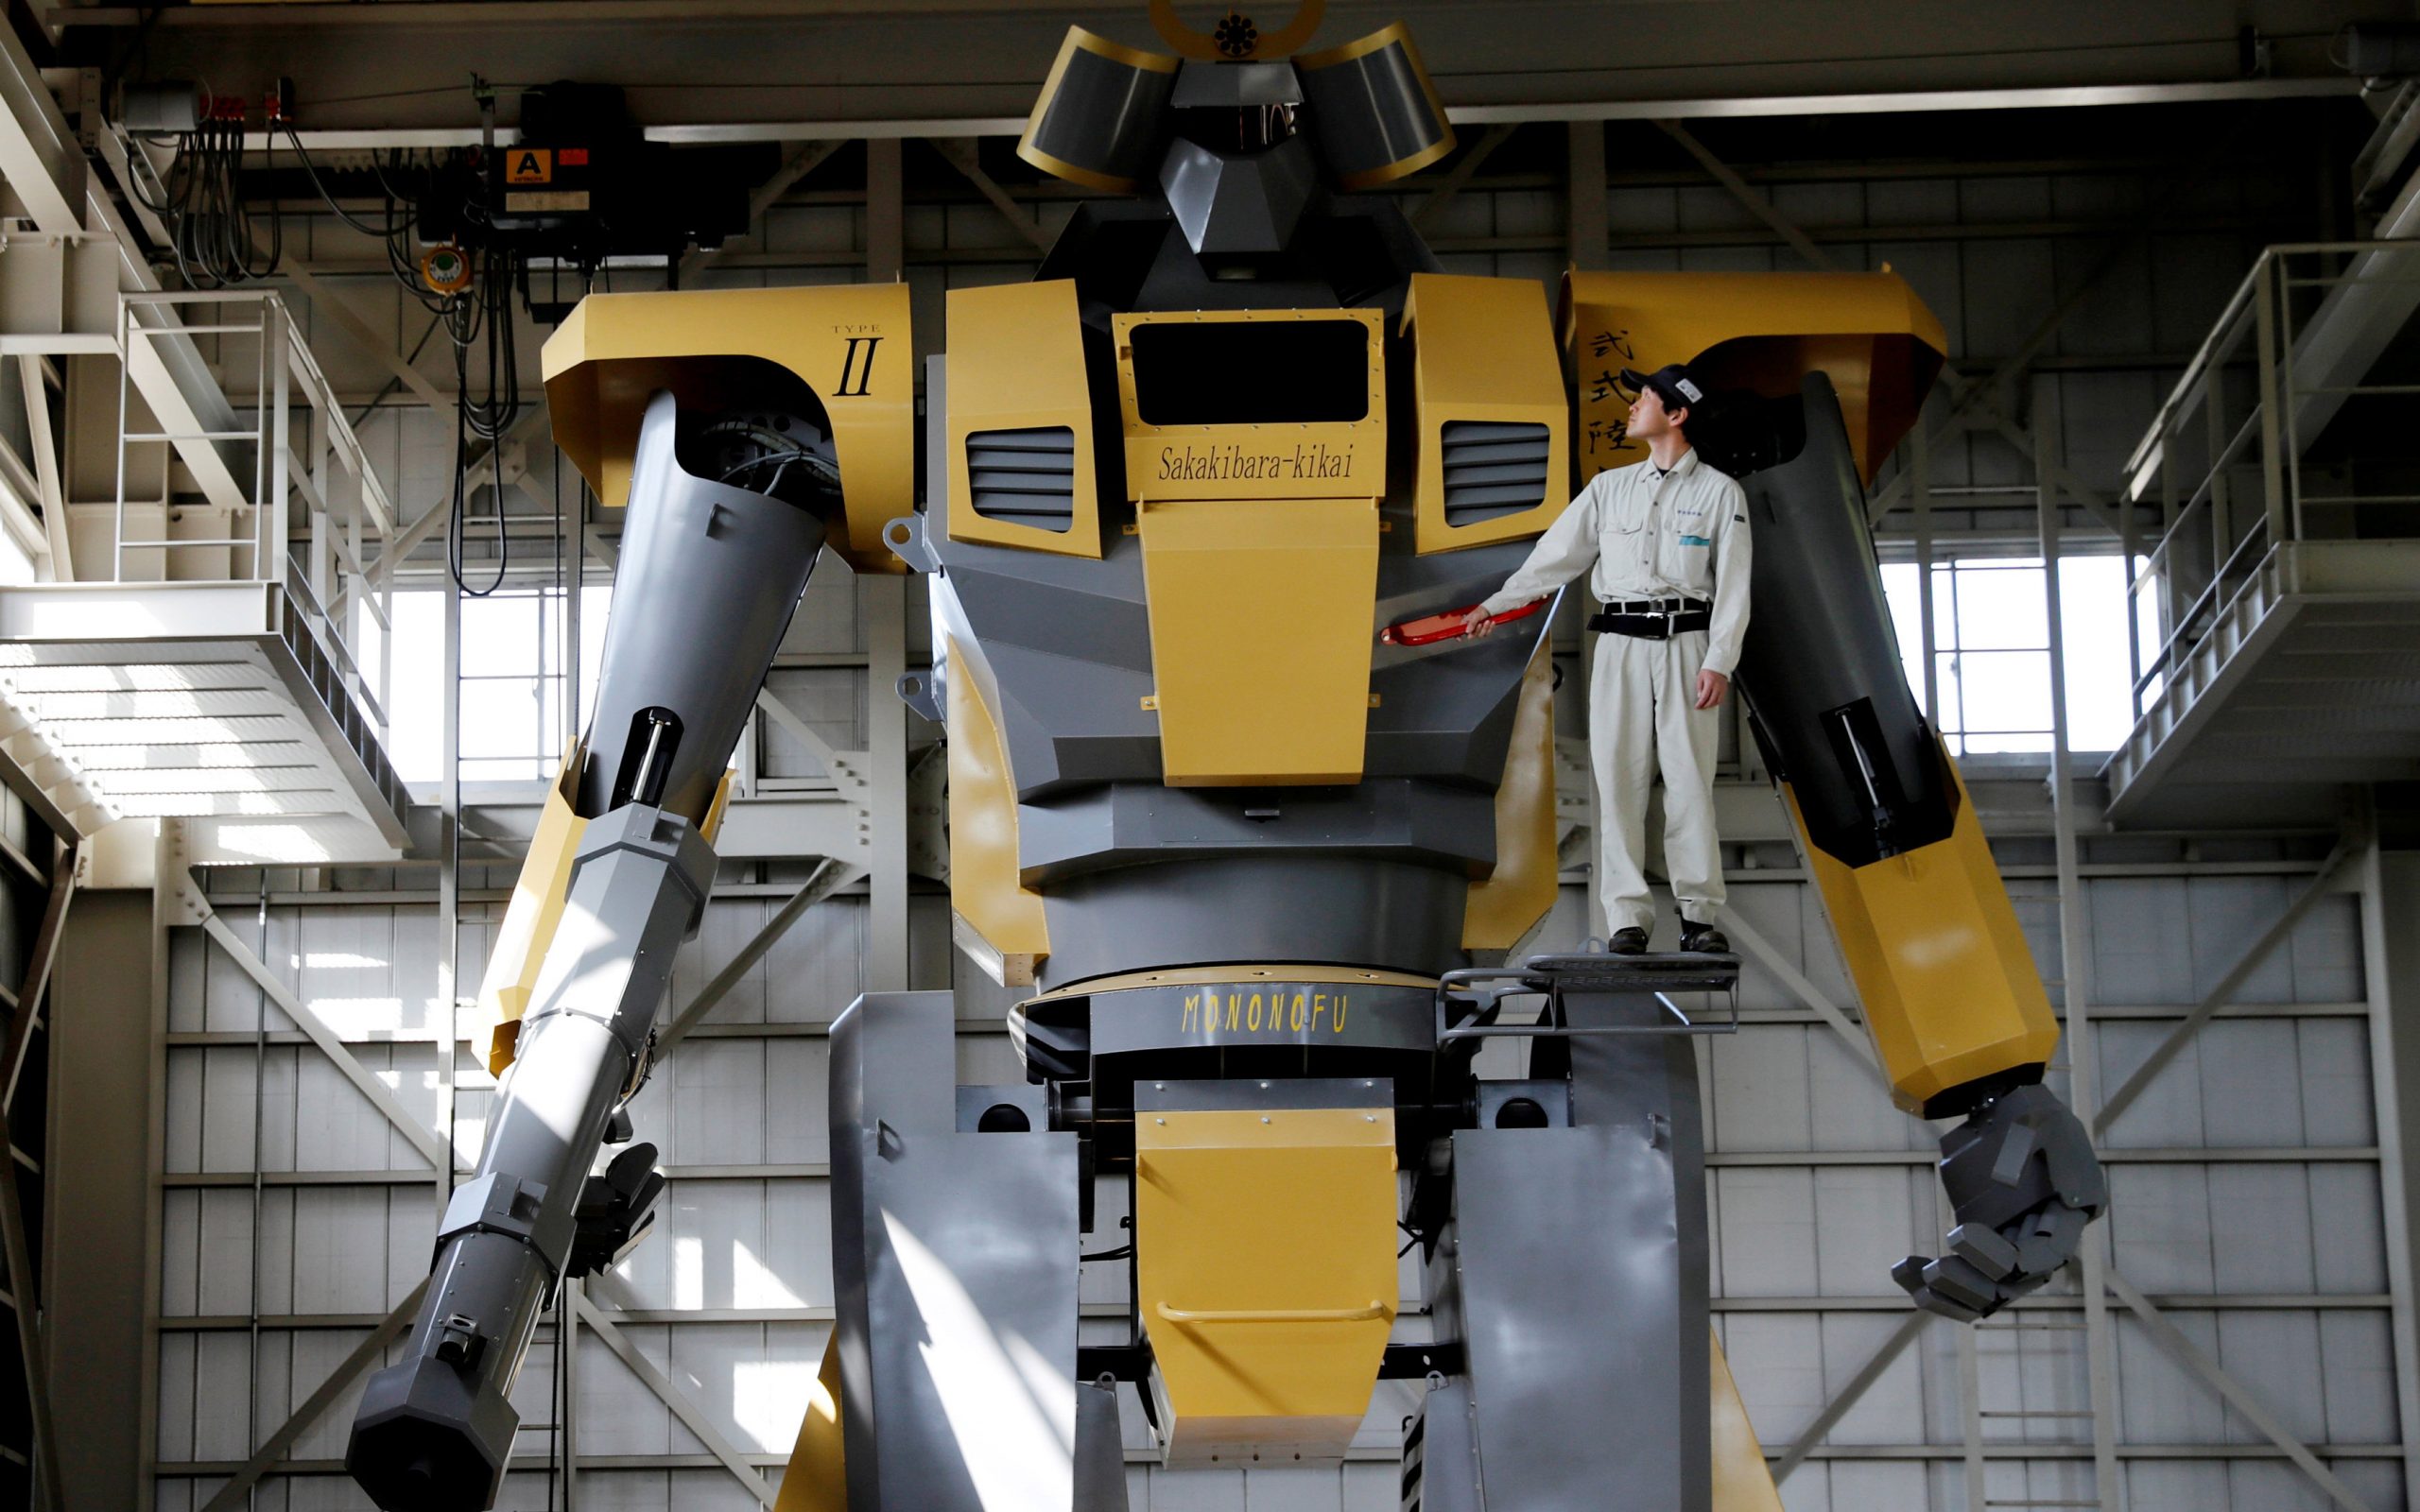 αυτό-είναι-το-μεγαλύτερο-ρομπότ-μέχρι-2244739